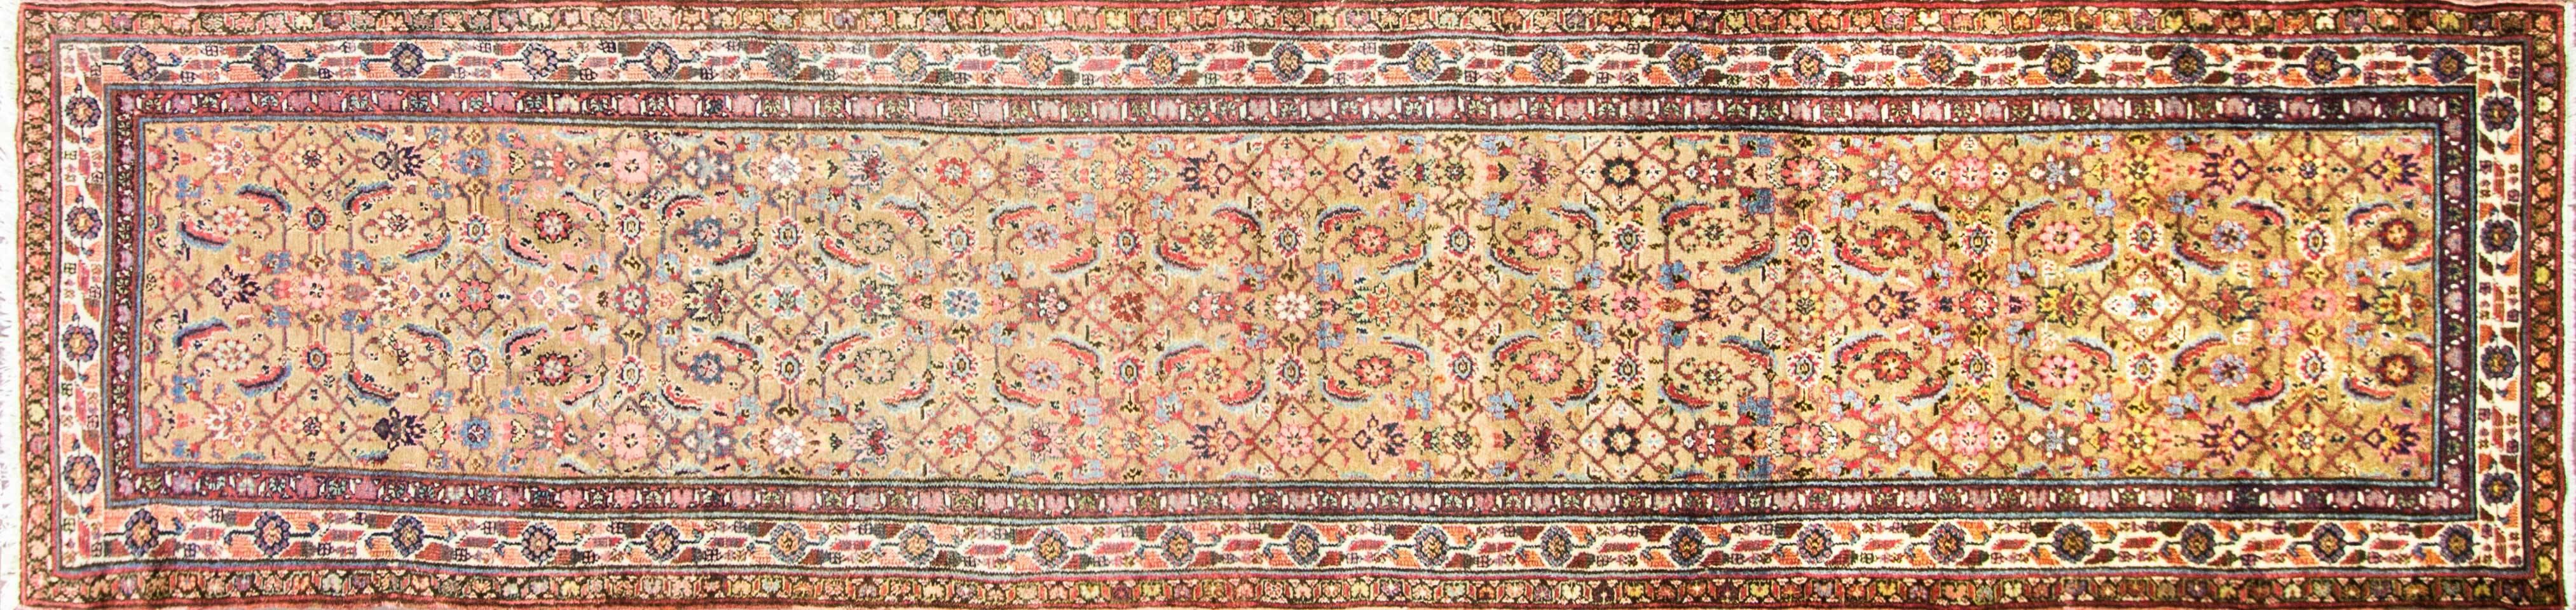 Un agréable motif Botheh avec une bordure de couleur ivoire. Les tisserands tribaux de Malayer étaient souvent turcs et ils utilisaient le nœud turc, Gourde, pour tisser ces créations. Le Gourde est un nœud symétrique, par opposition au nœud